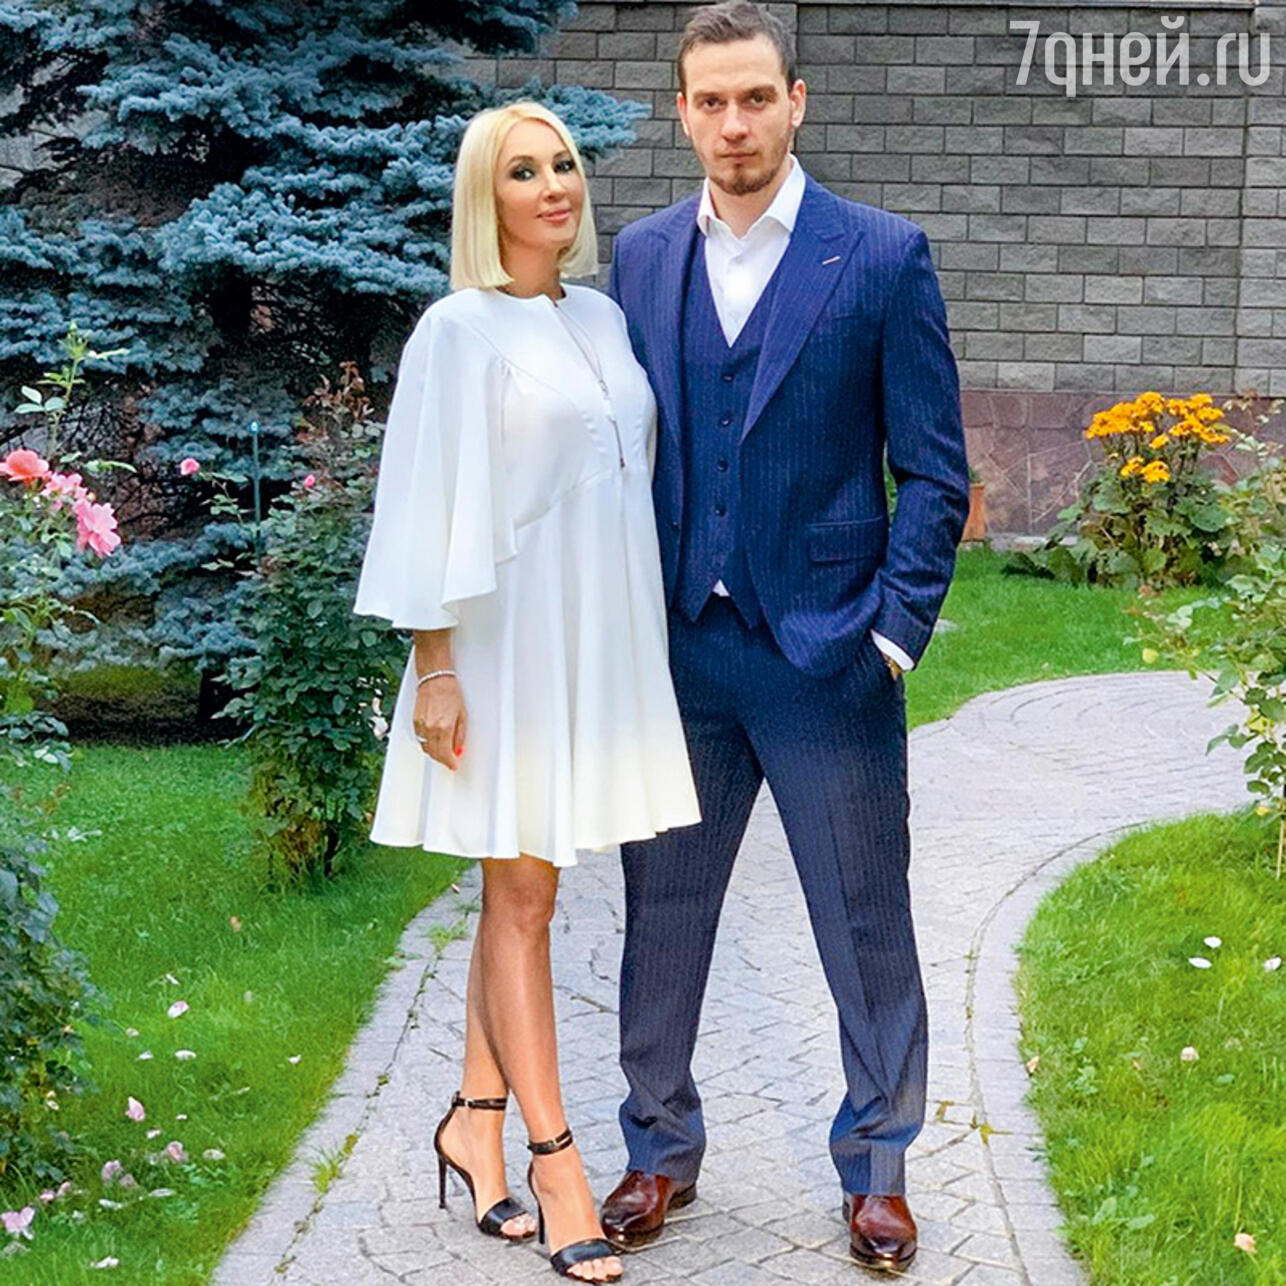 Лера Кудрявцева с мужем Игорем Макаровым